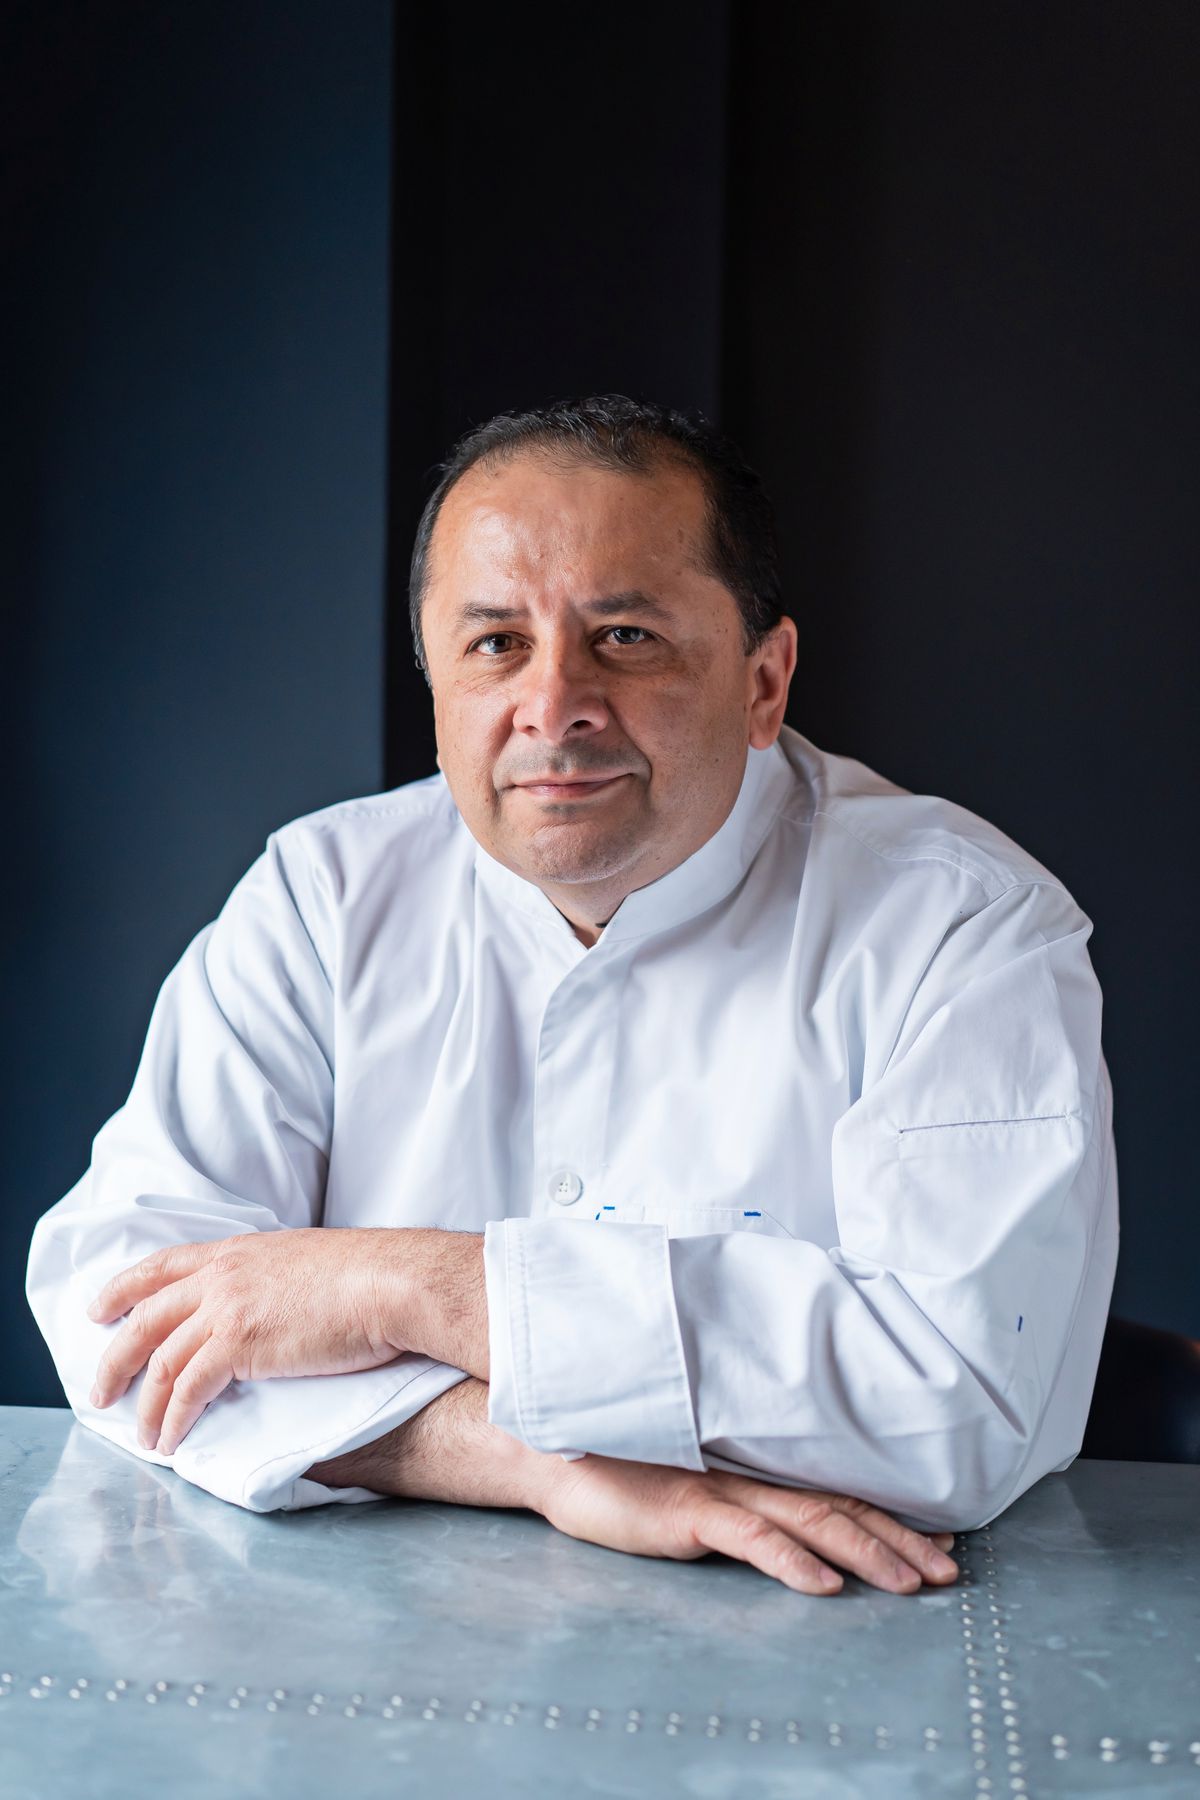 &nbsp;Executive chef Jaime Velasquez